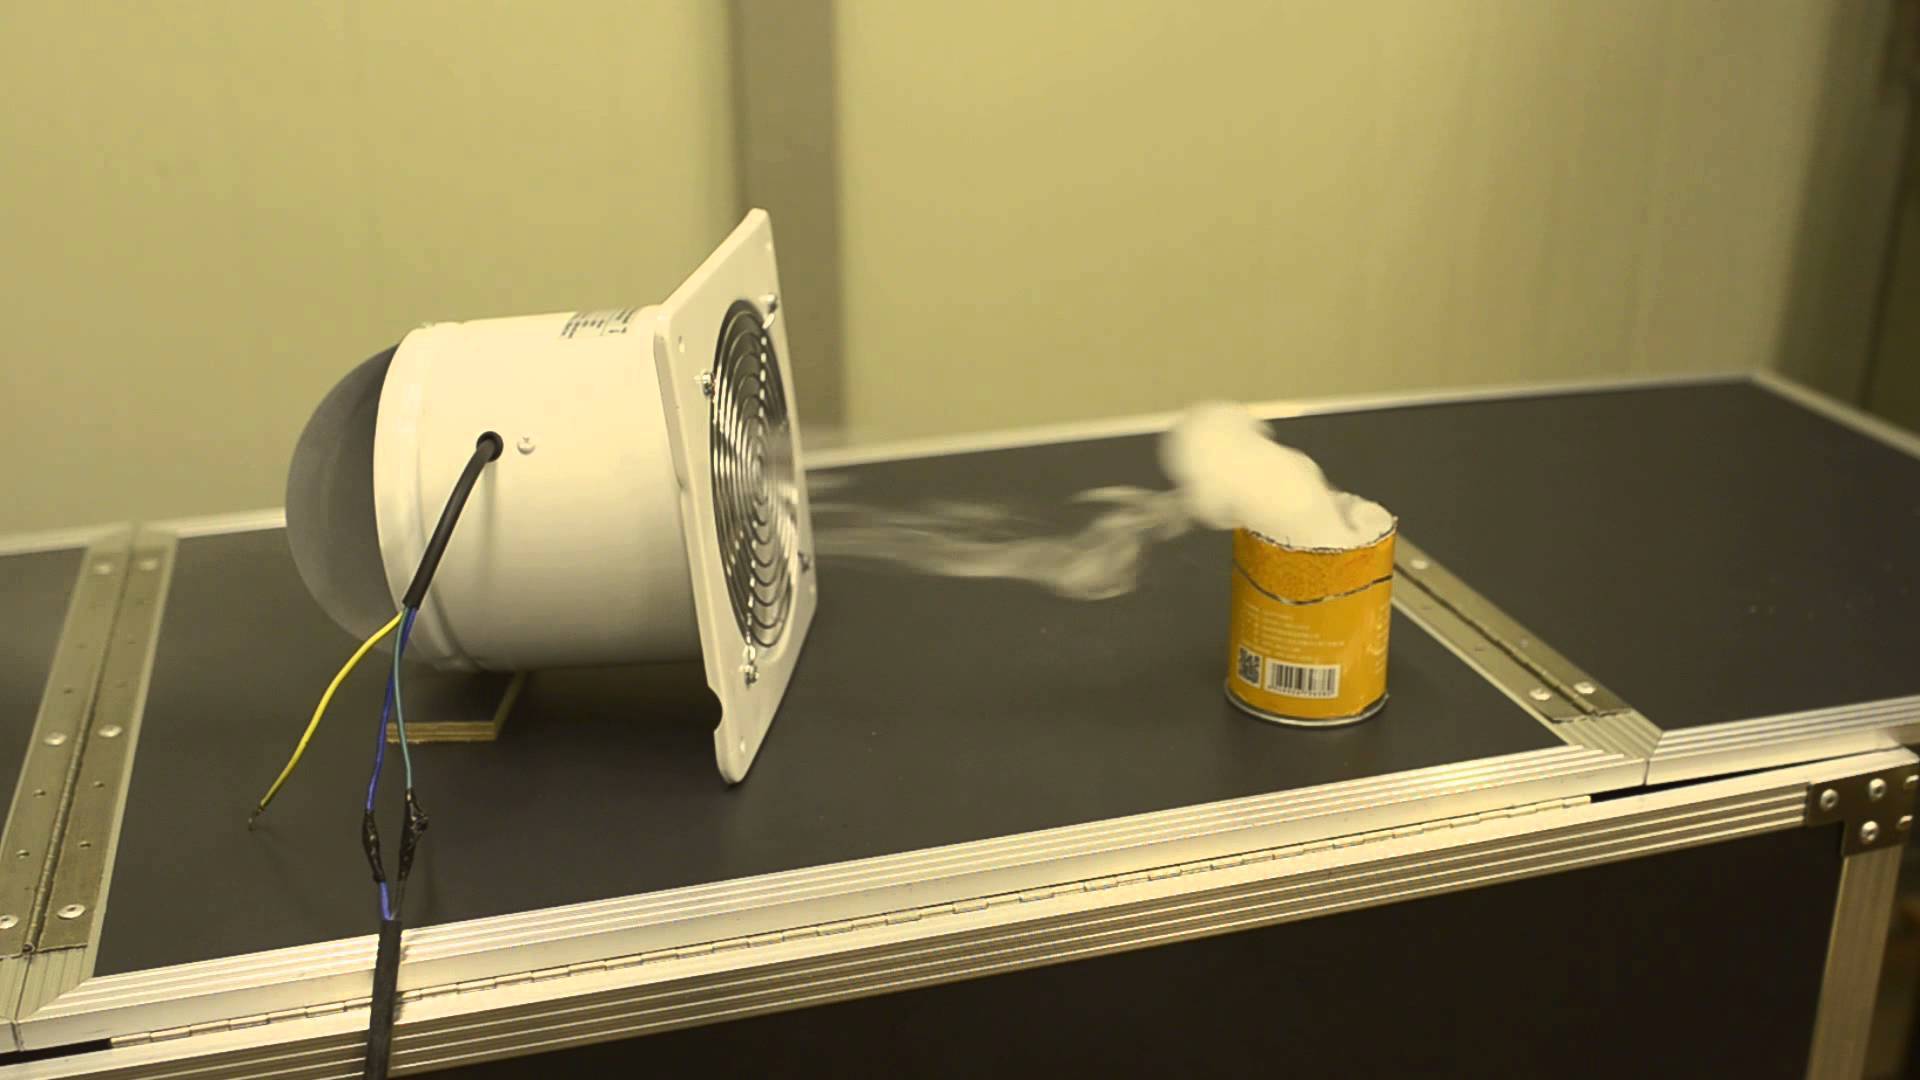 Правильная циркуляция воздуха в квартире: схема вентиляции